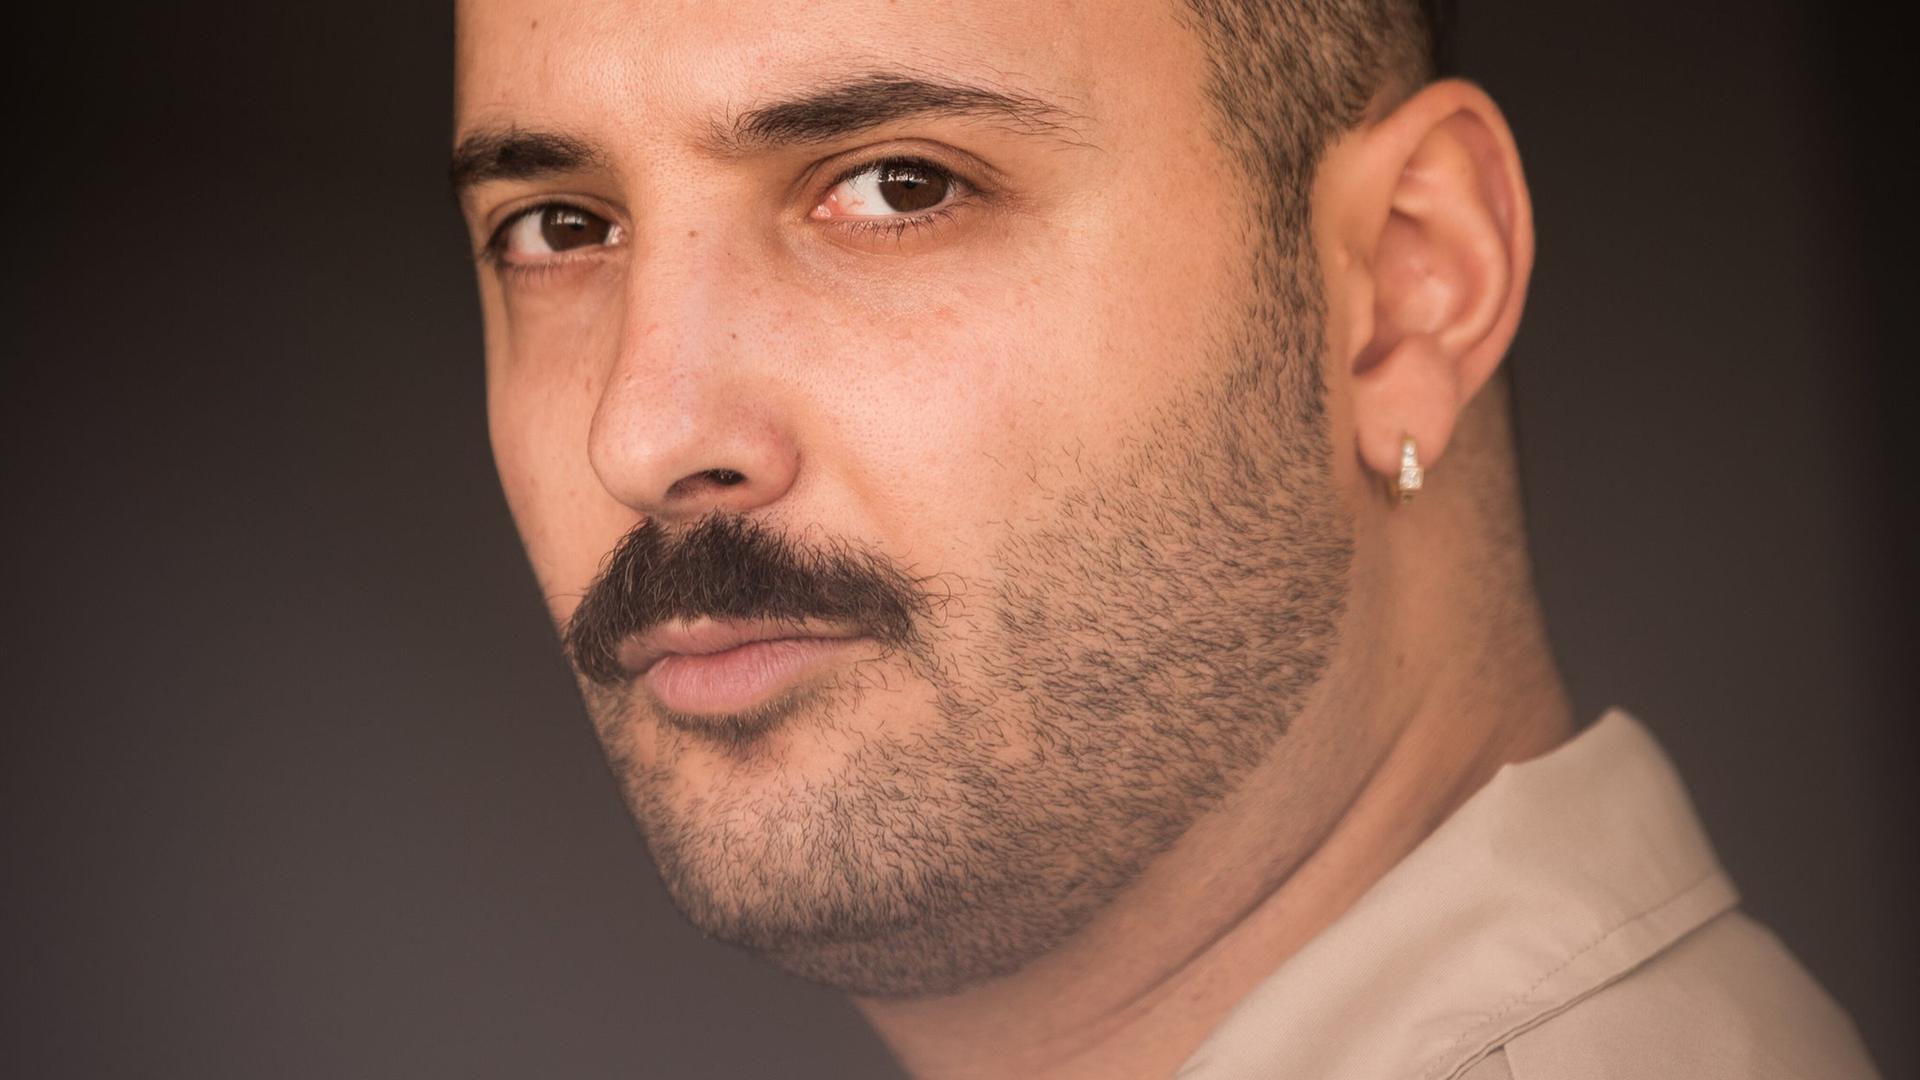 Fikri Anıl Altıntaş, ein junger Mann mit Schnurrbart und einem dezenten Ohrring im linken Ohr, schaut im Halbprofil entspannt in die Kamera.